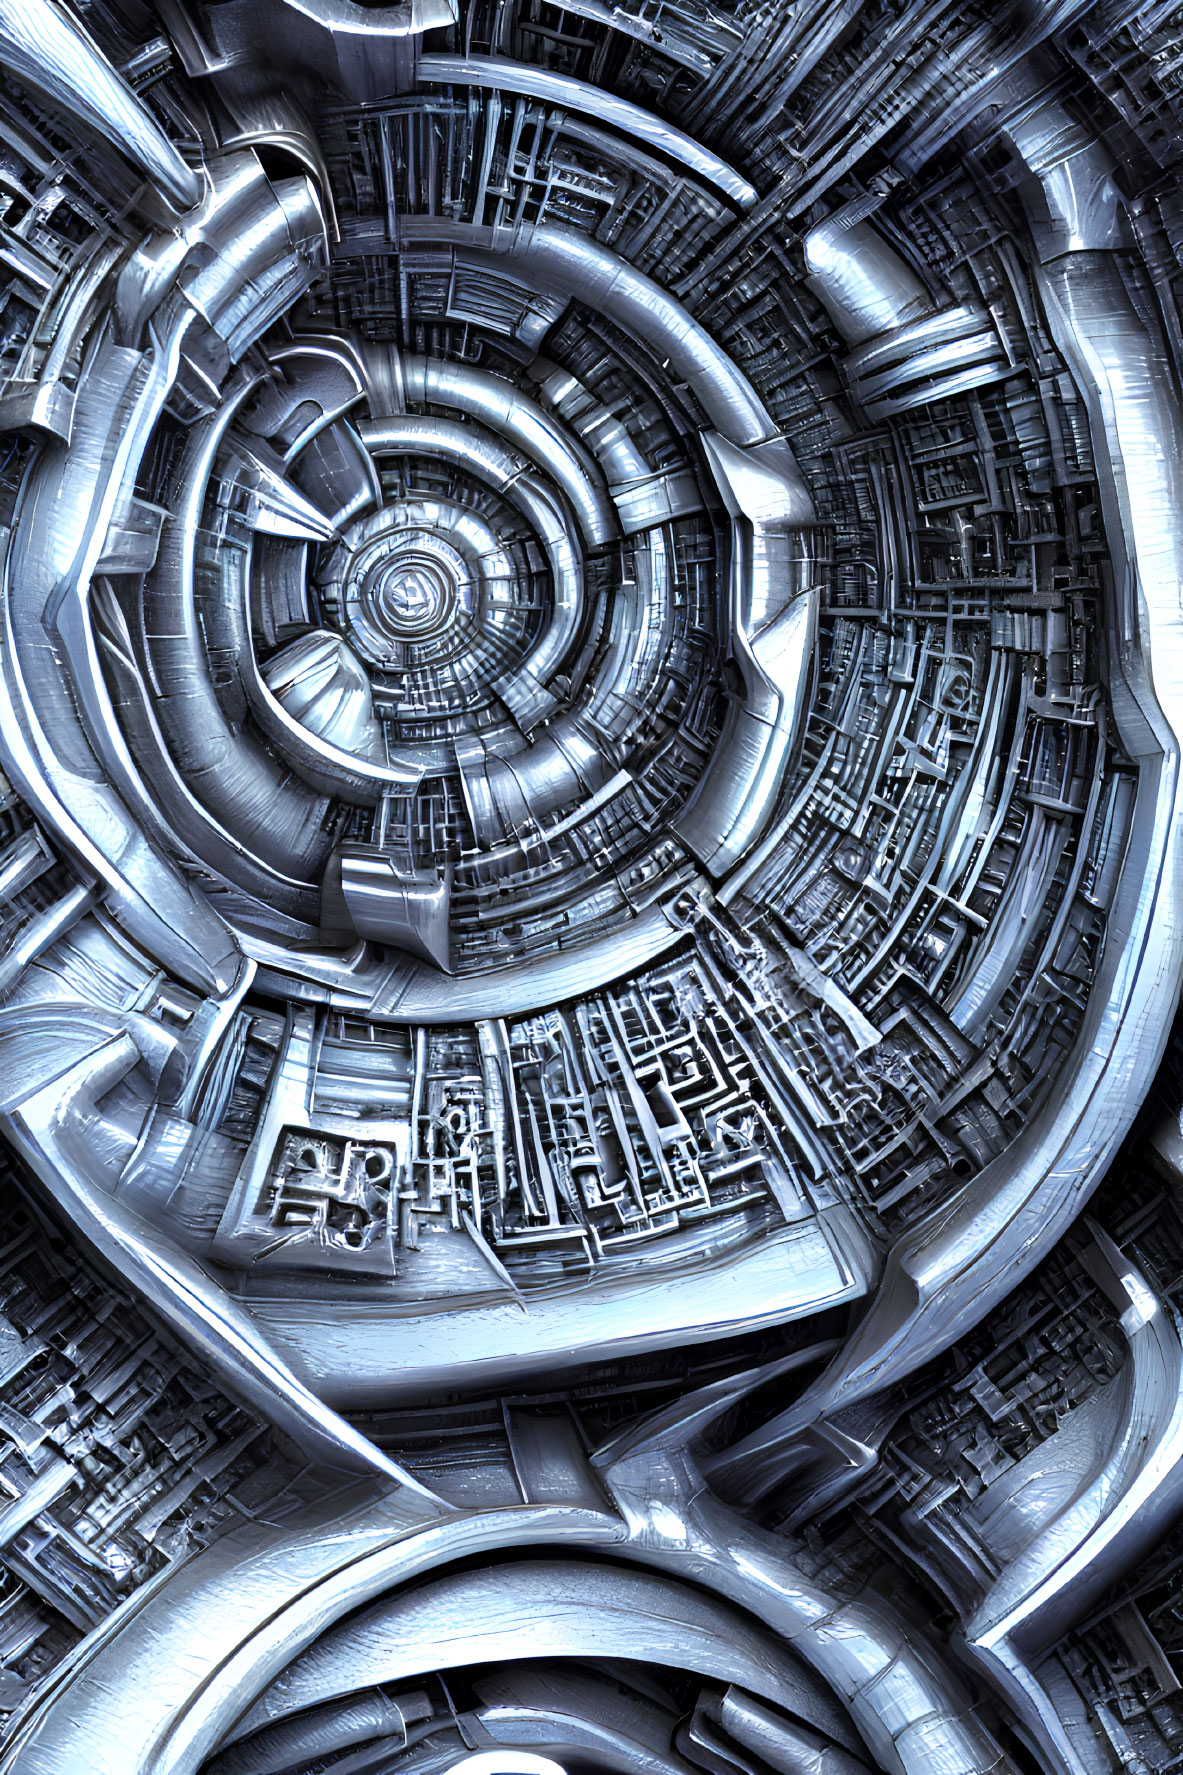 Intricate metallic fractal image with circular sci-fi pattern